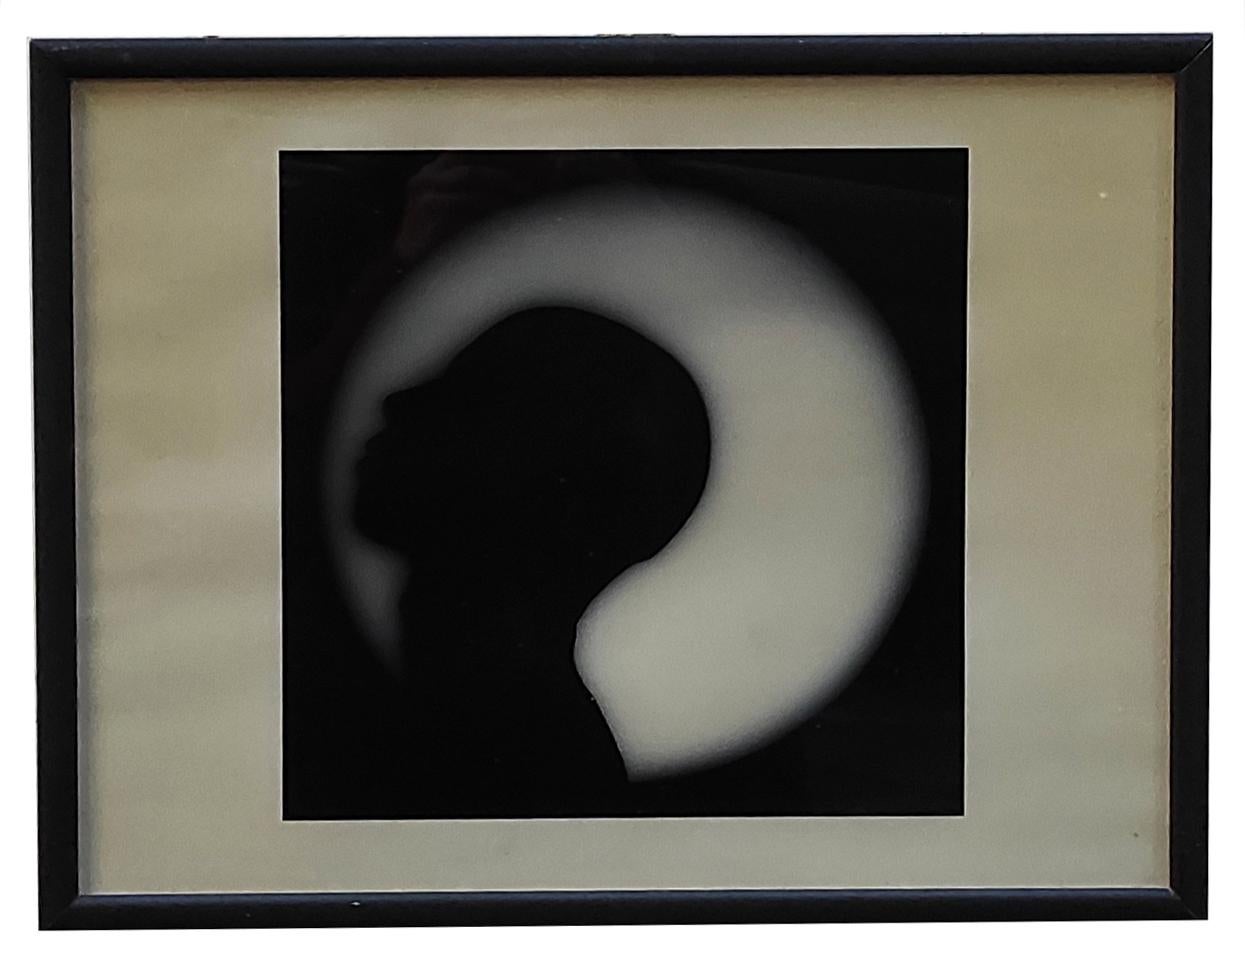 CHIARO DI LUNA - Fotografia bianco e nero su carta fotografica